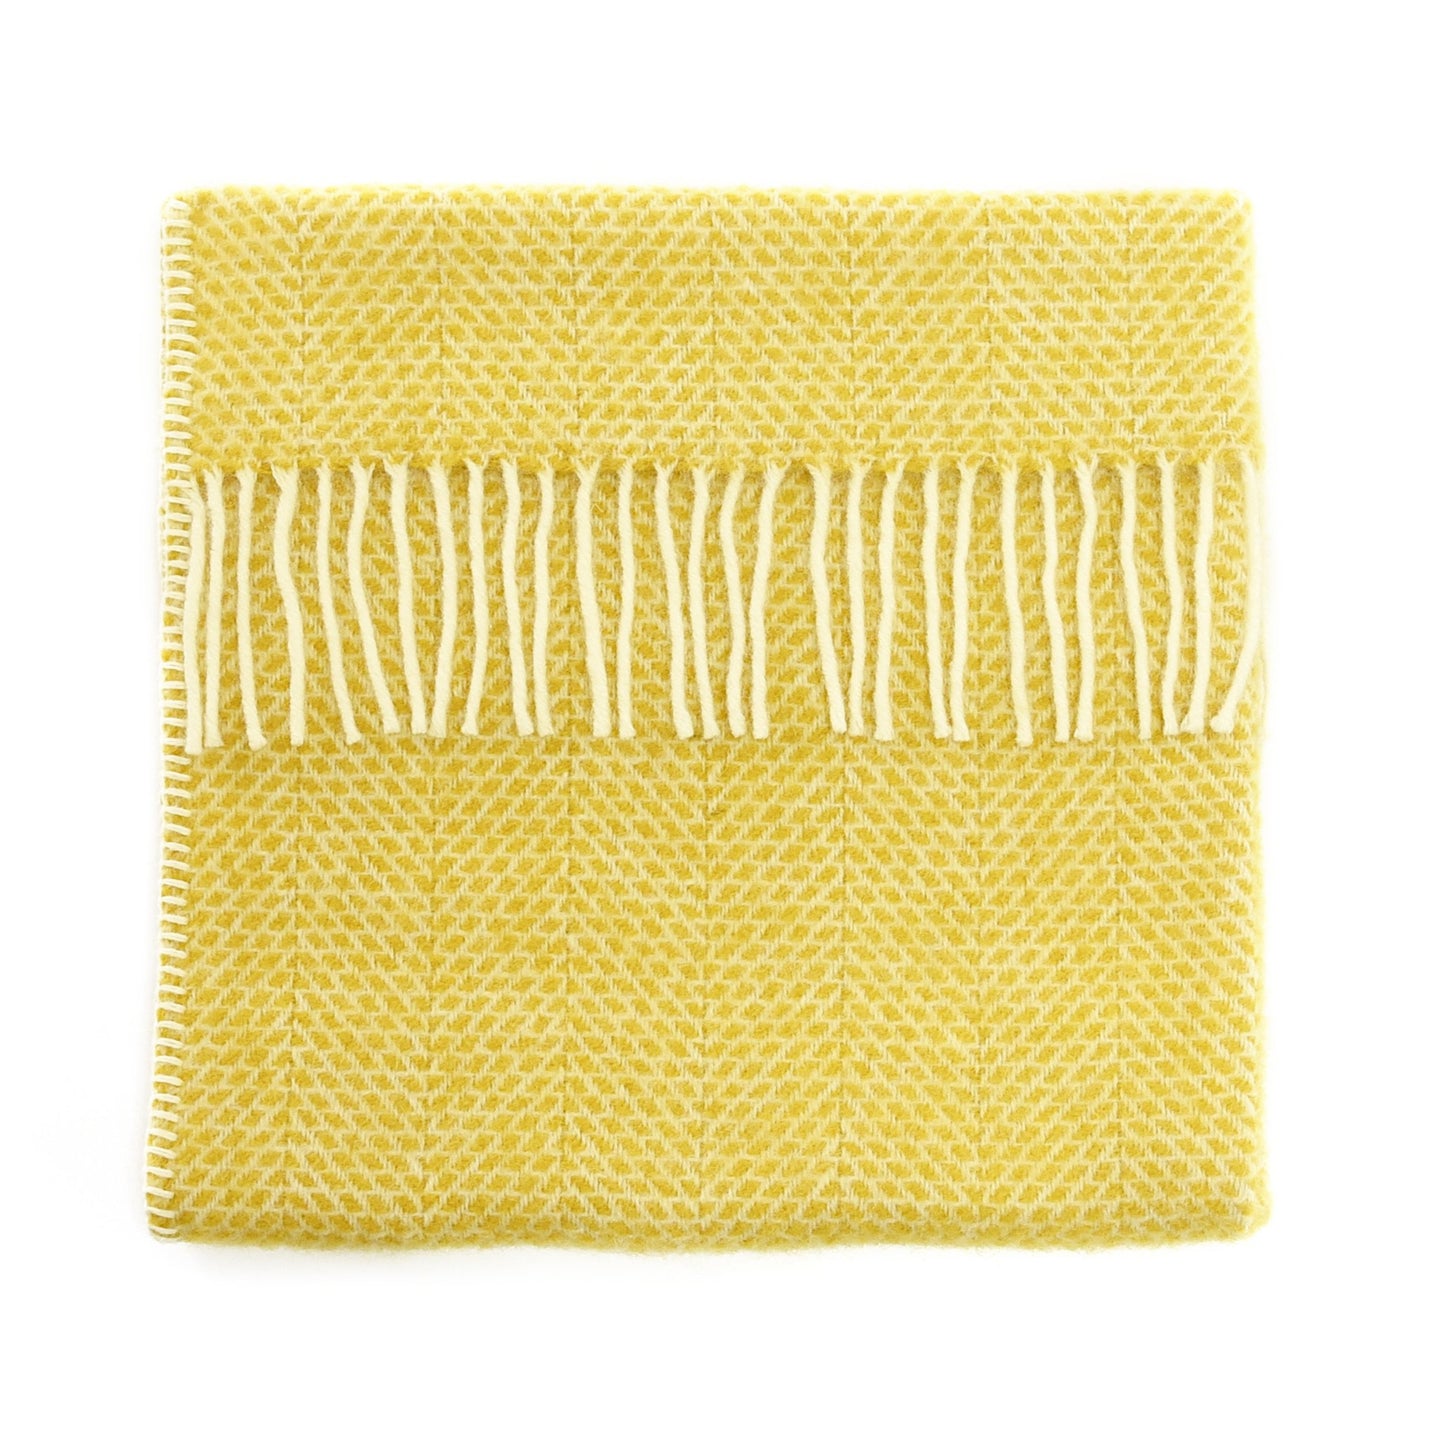 Yellow Beehive Baby Pram Blanket by Tweedmill